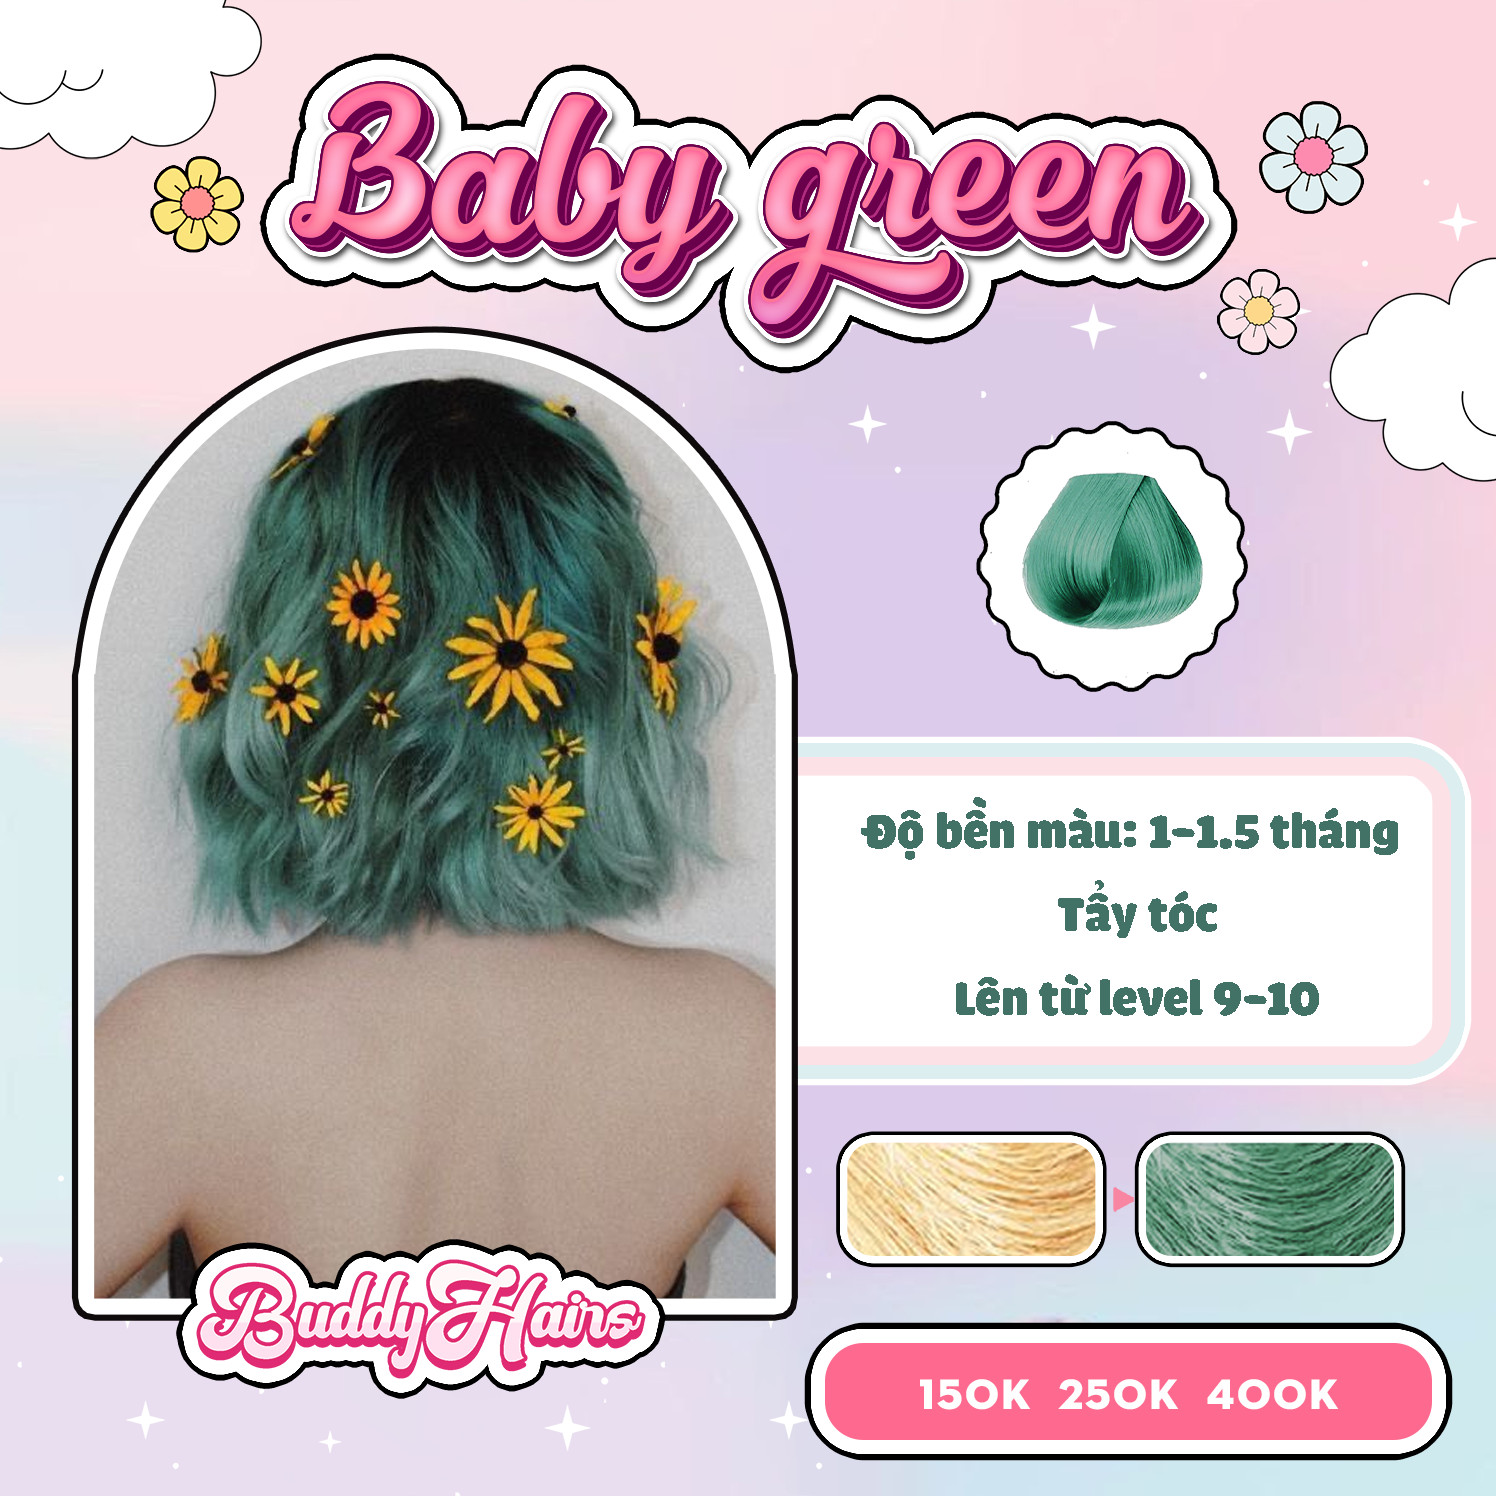 Thuốc nhuộm tóc baby green/green pastel/xanh rêu nhạt mang đến cho bạn một phong cách mới mẻ và nổi bật. Với cách sử dụng đơn giản và thành phần tự nhiên, bạn sẽ tự tin khoe vẻ đẹp mới trên bức ảnh như một người mẫu chuyên nghiệp.